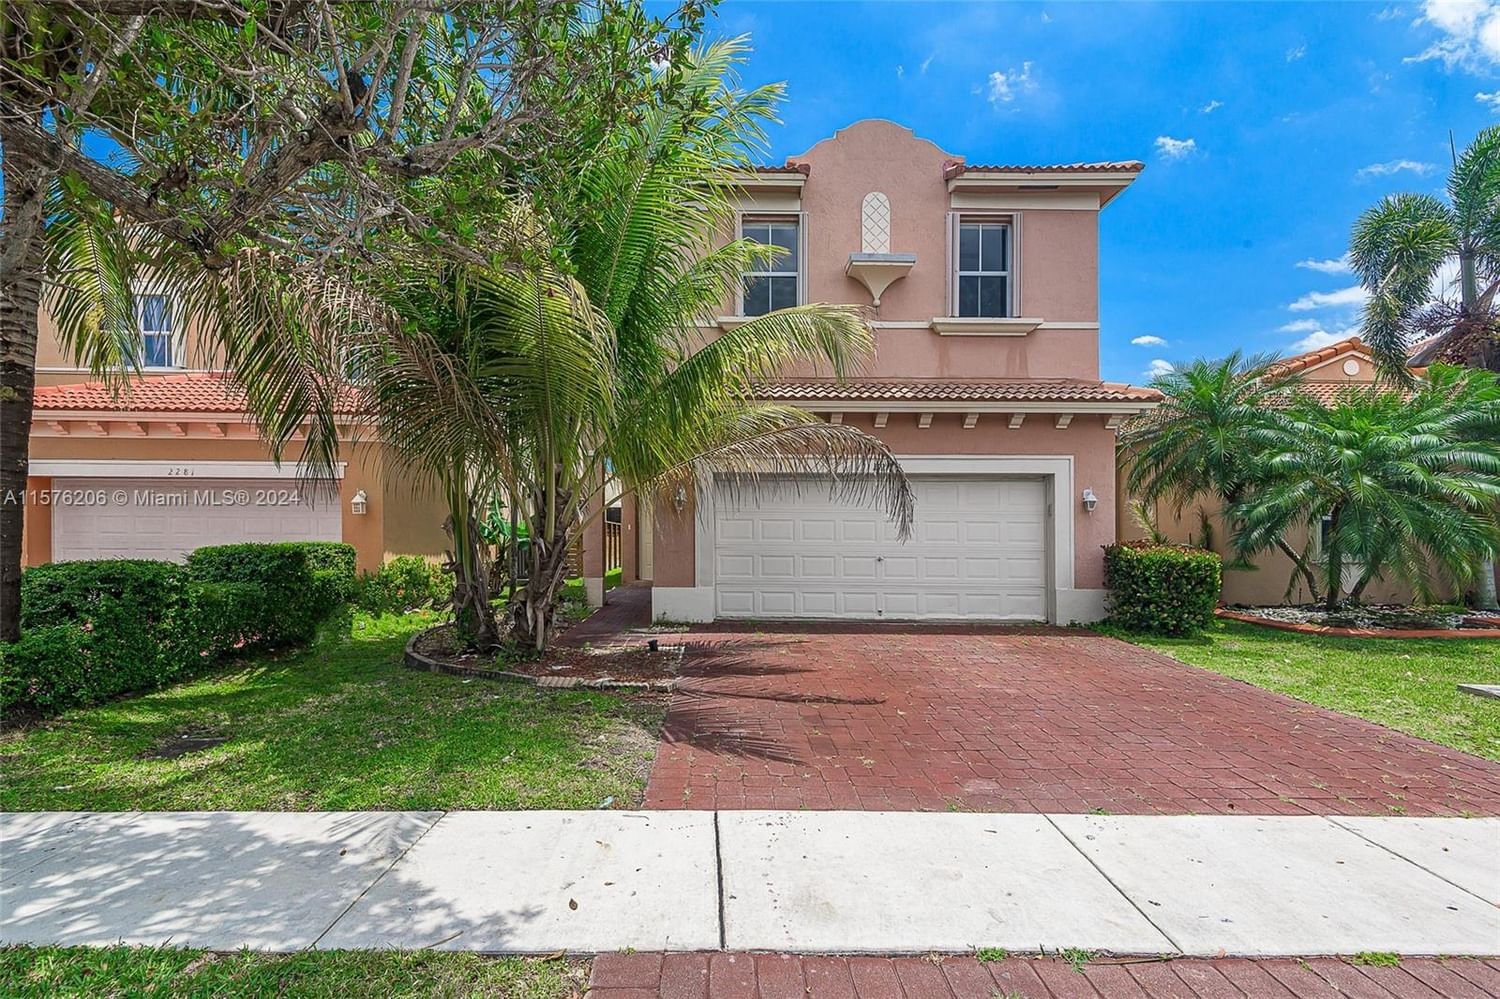 Real estate property located at 2271 37th Ter, Miami-Dade County, Waterstone Portofino Bay, Homestead, FL